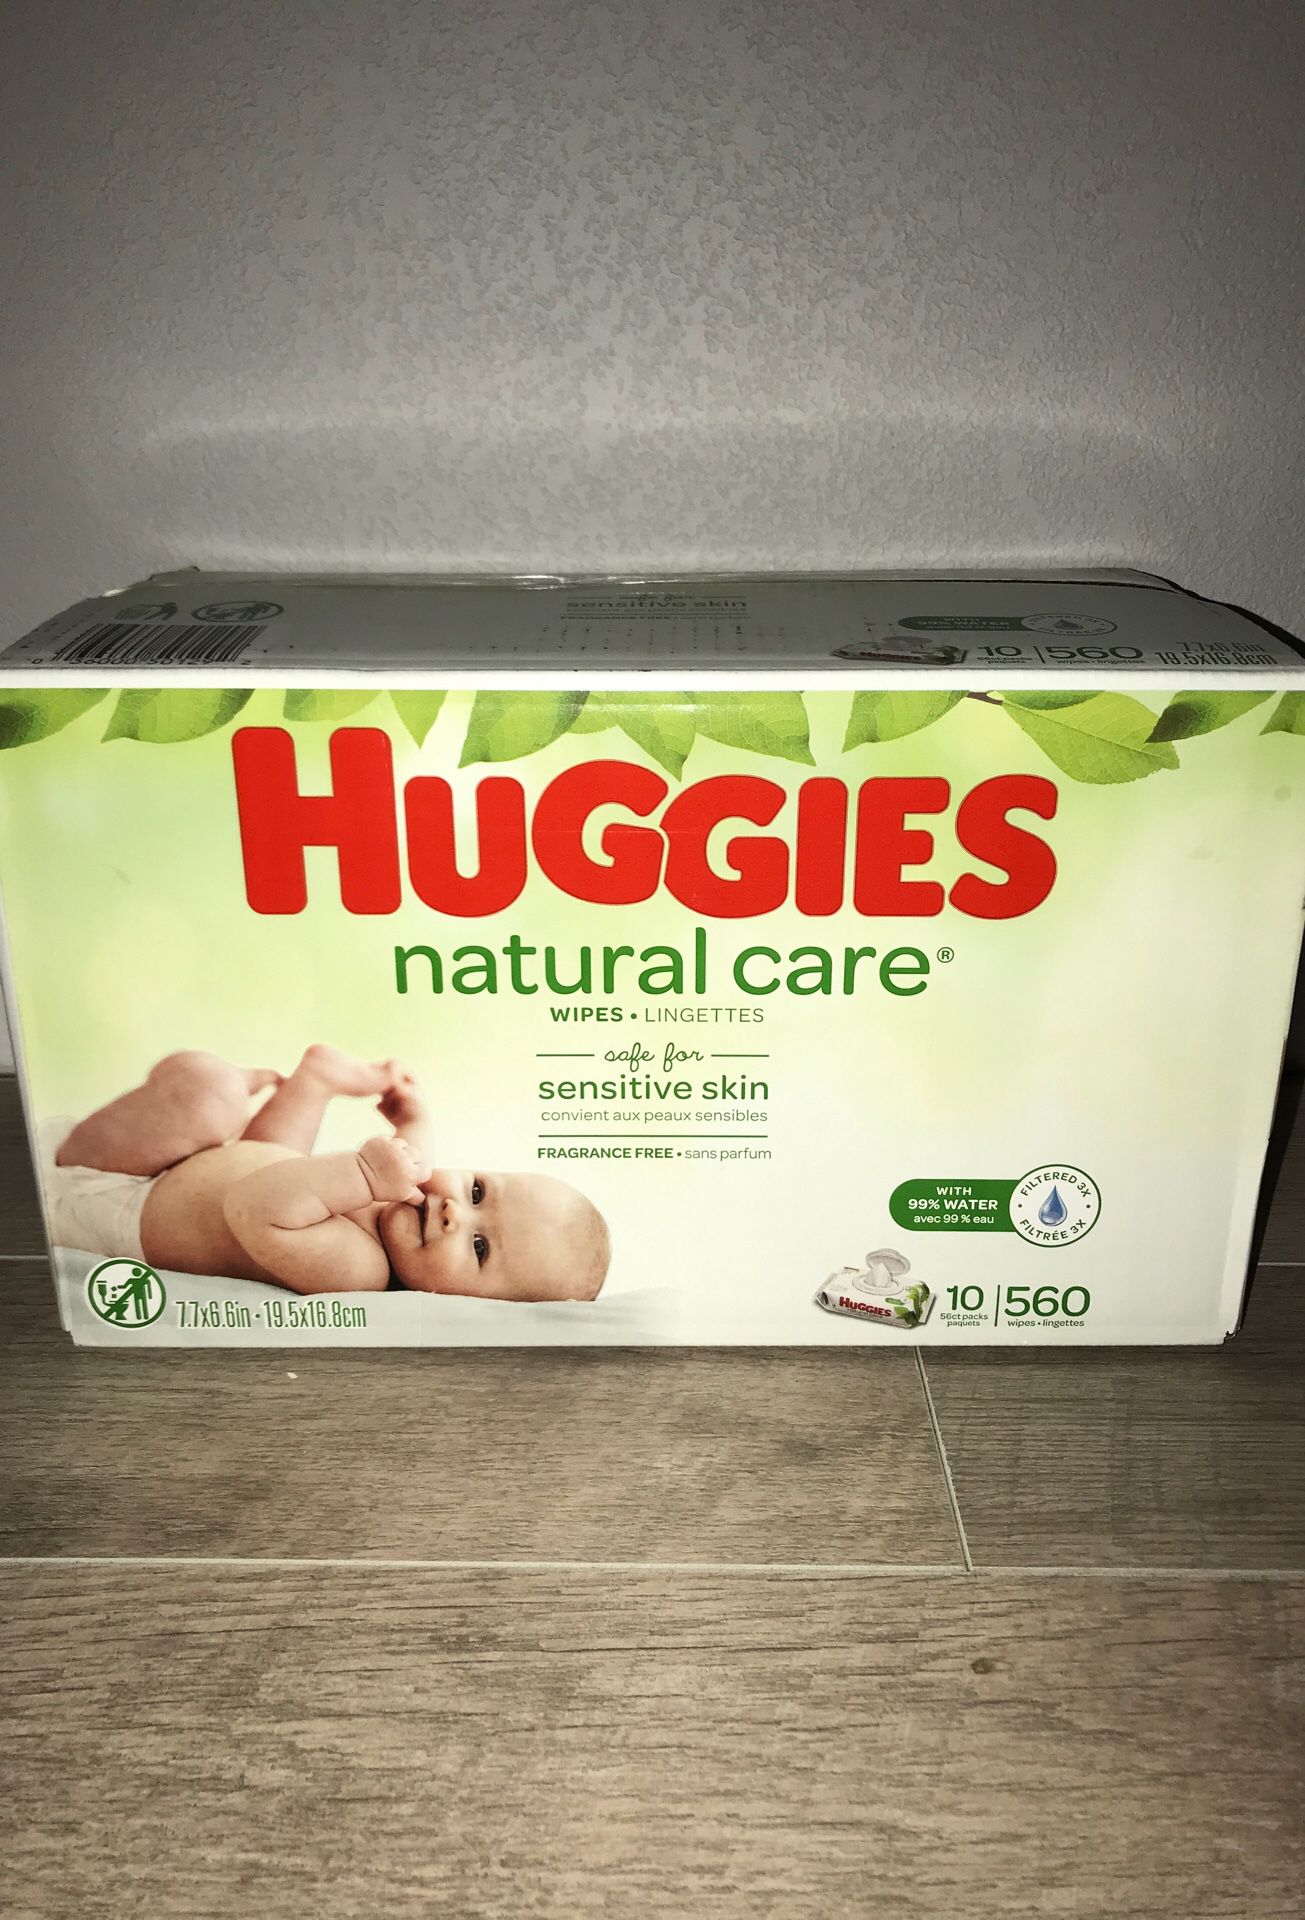 Huggies natural care wipes